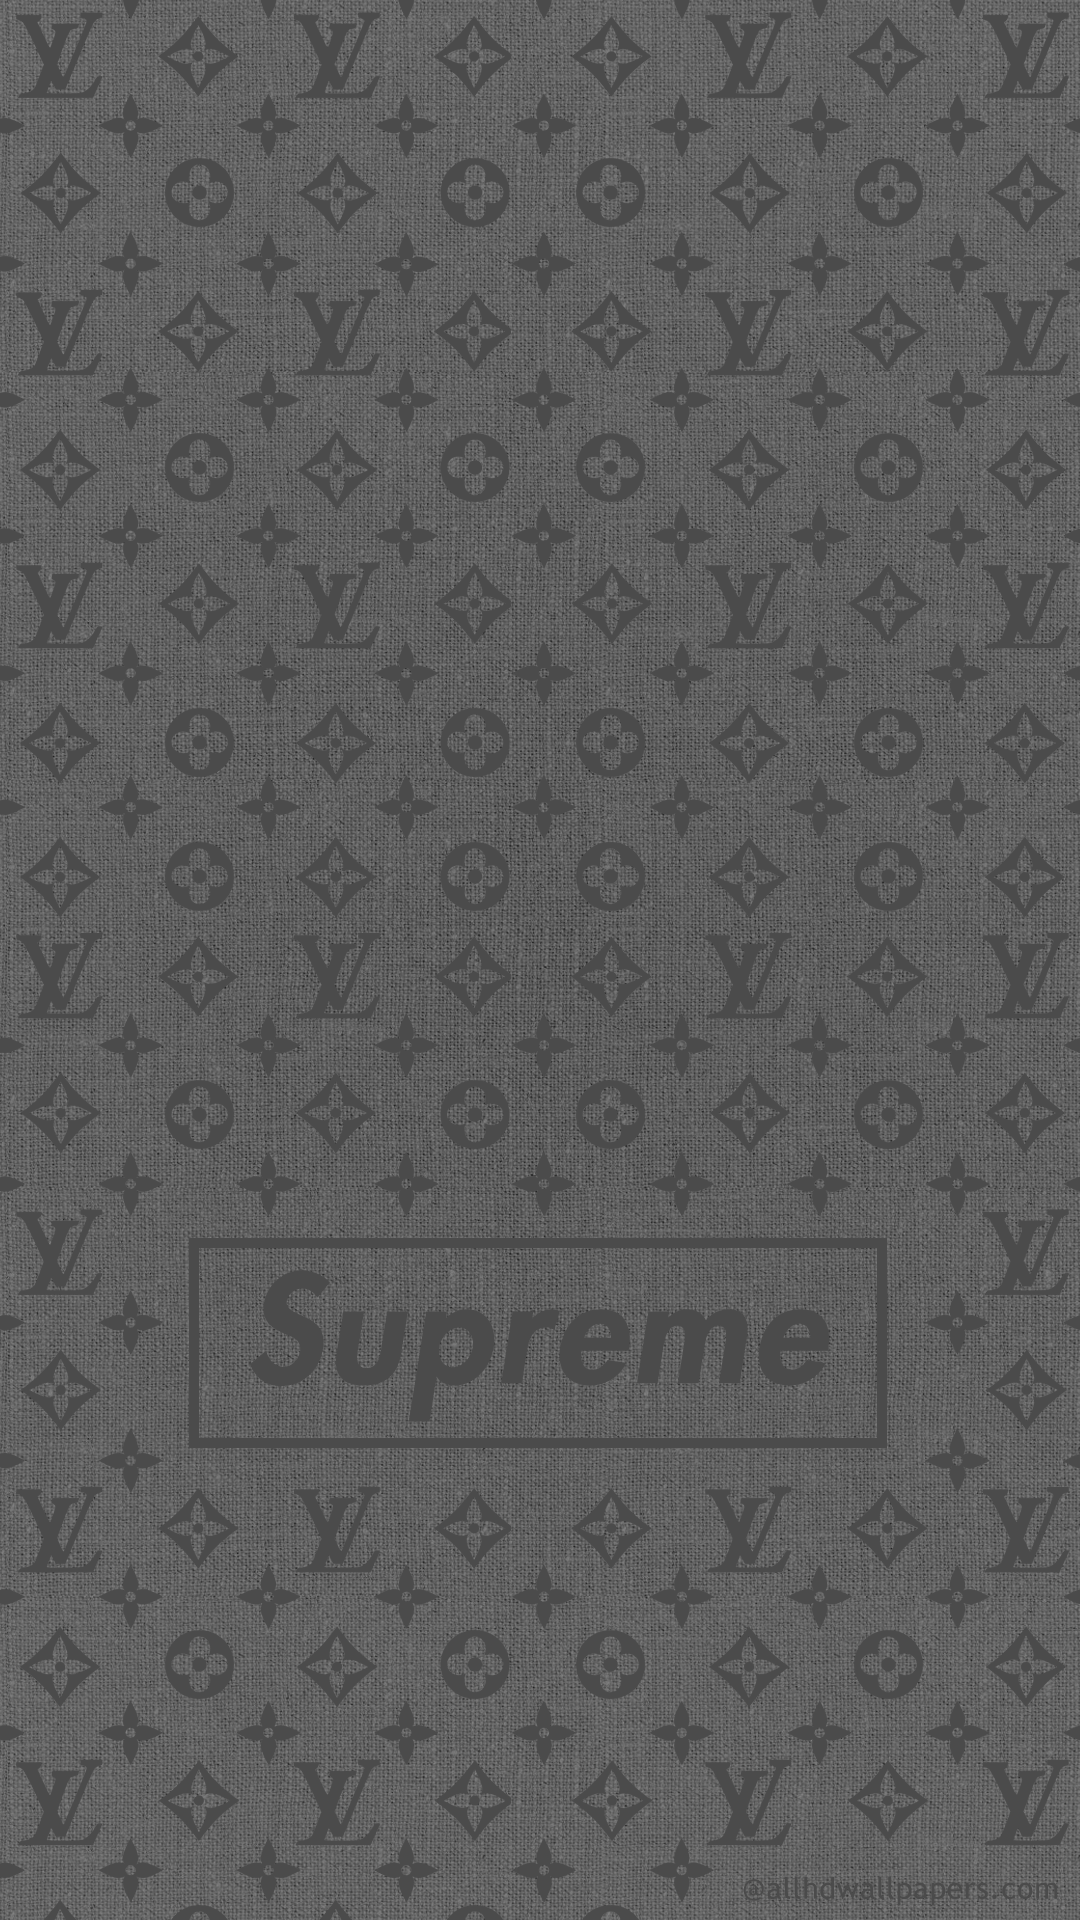 38 Supreme Print Iphone Wallpaper On Wallpapersafari